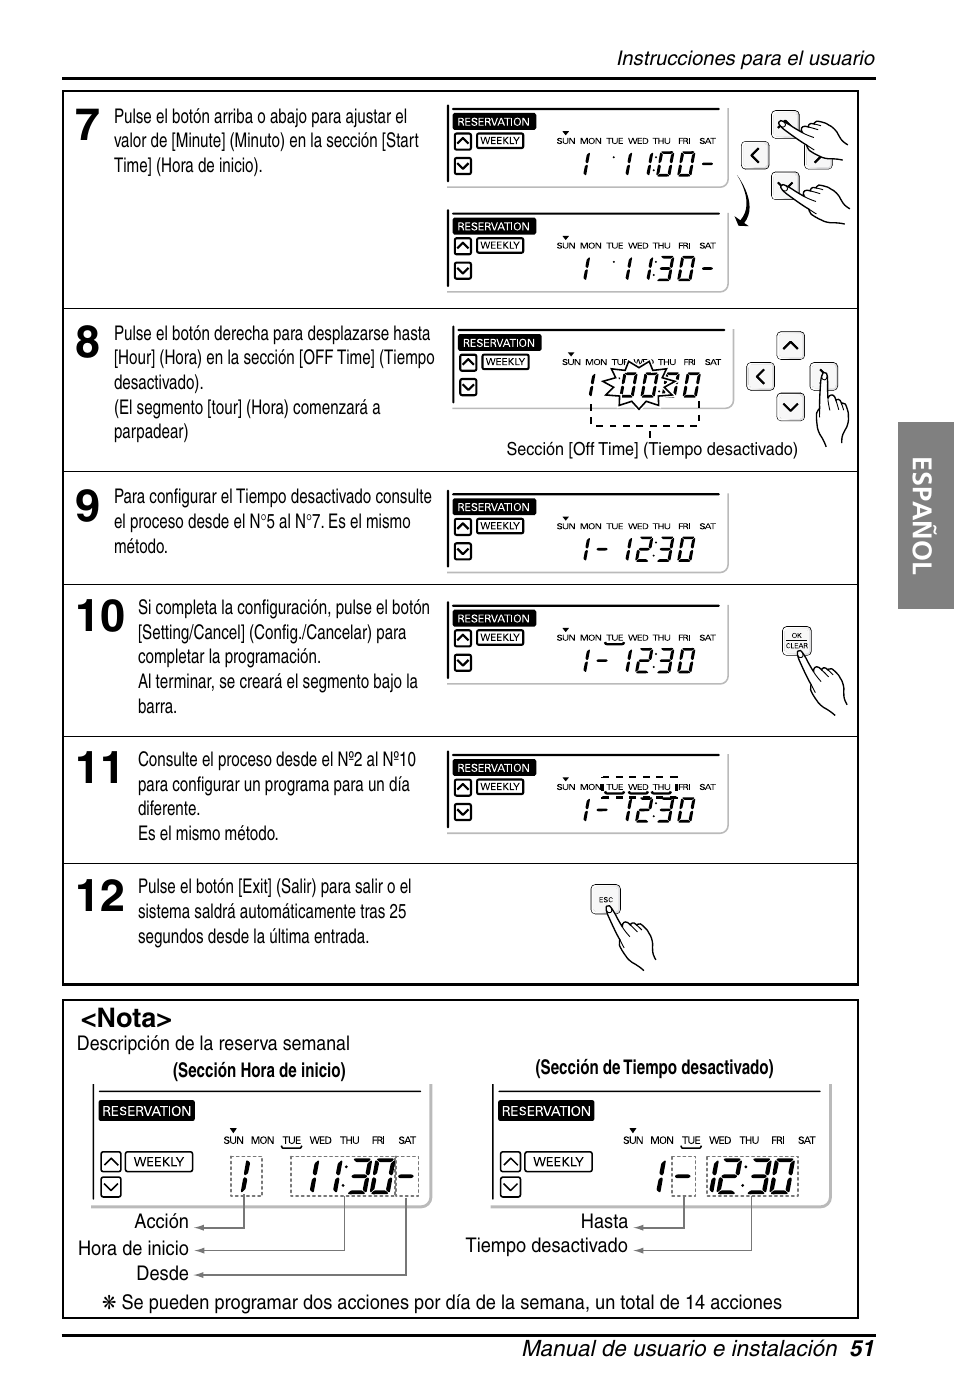 LG PQRCUSA1 Manual del usuario | Página 51 / 55